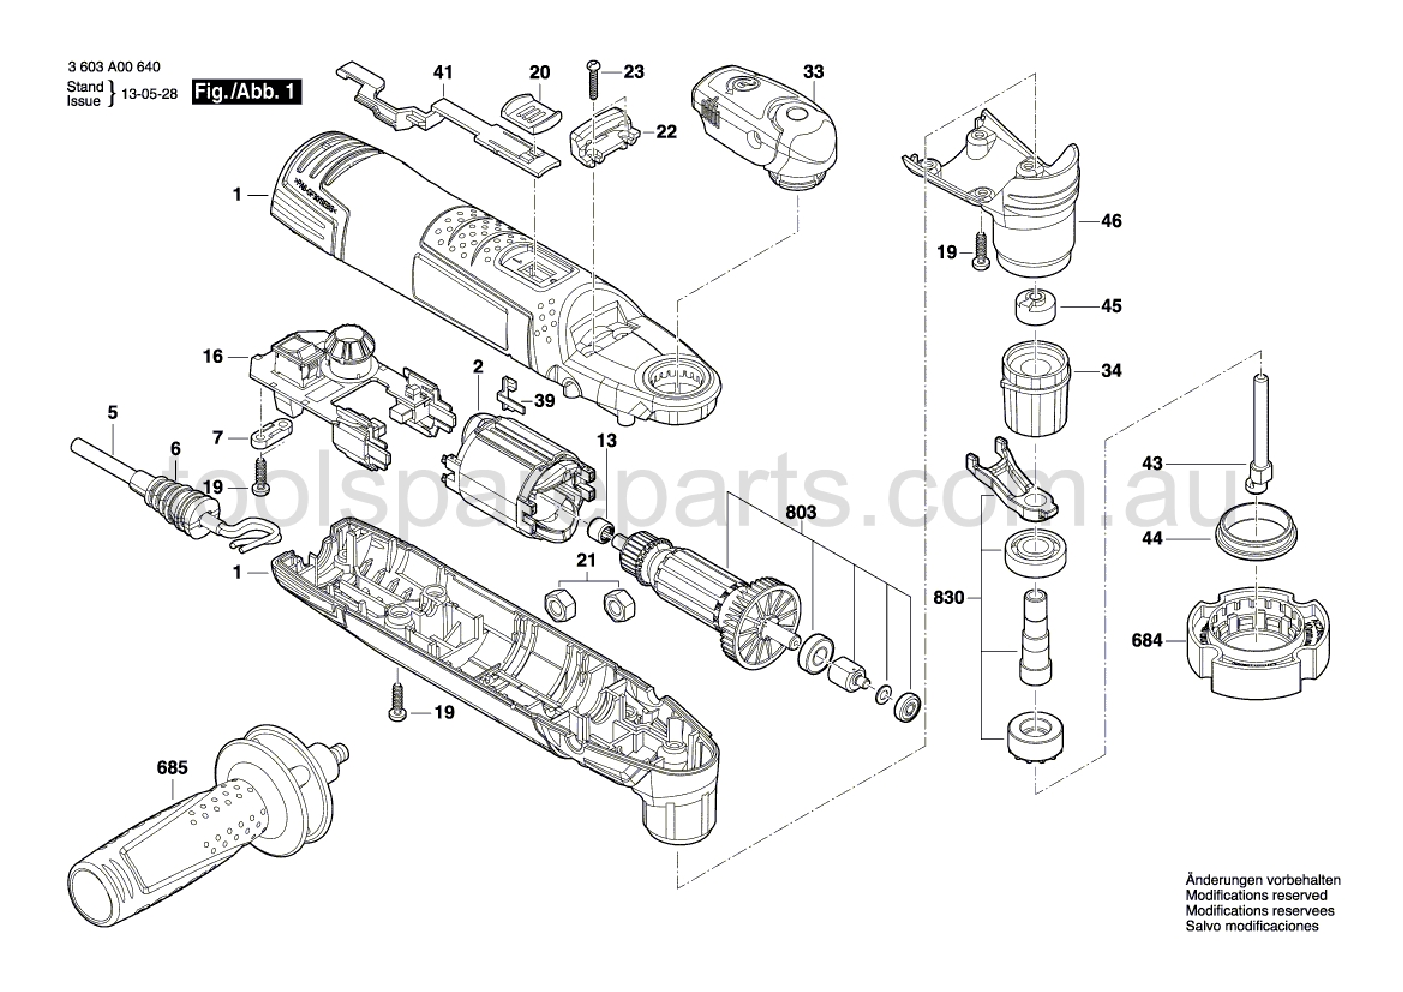 Bosch PMF 250 CES 3603A00640  Diagram 1